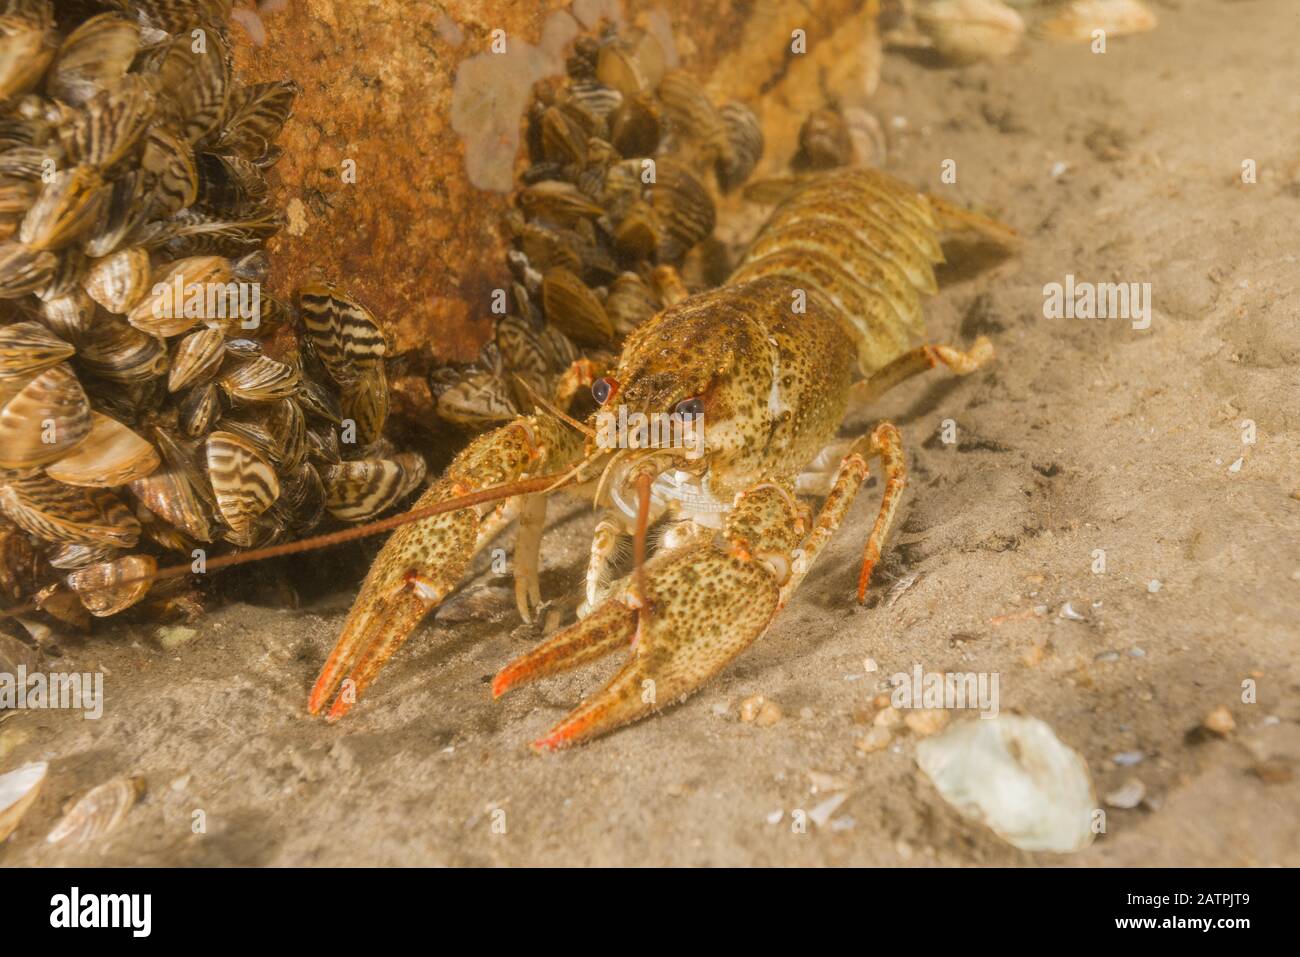 Gamberi (Astacus leptodactylus, Astacus astacus) sul fondo sabbioso, fiume Dnieper, Zaporizhia Oblast, Ucraina, Europa orientale Foto Stock